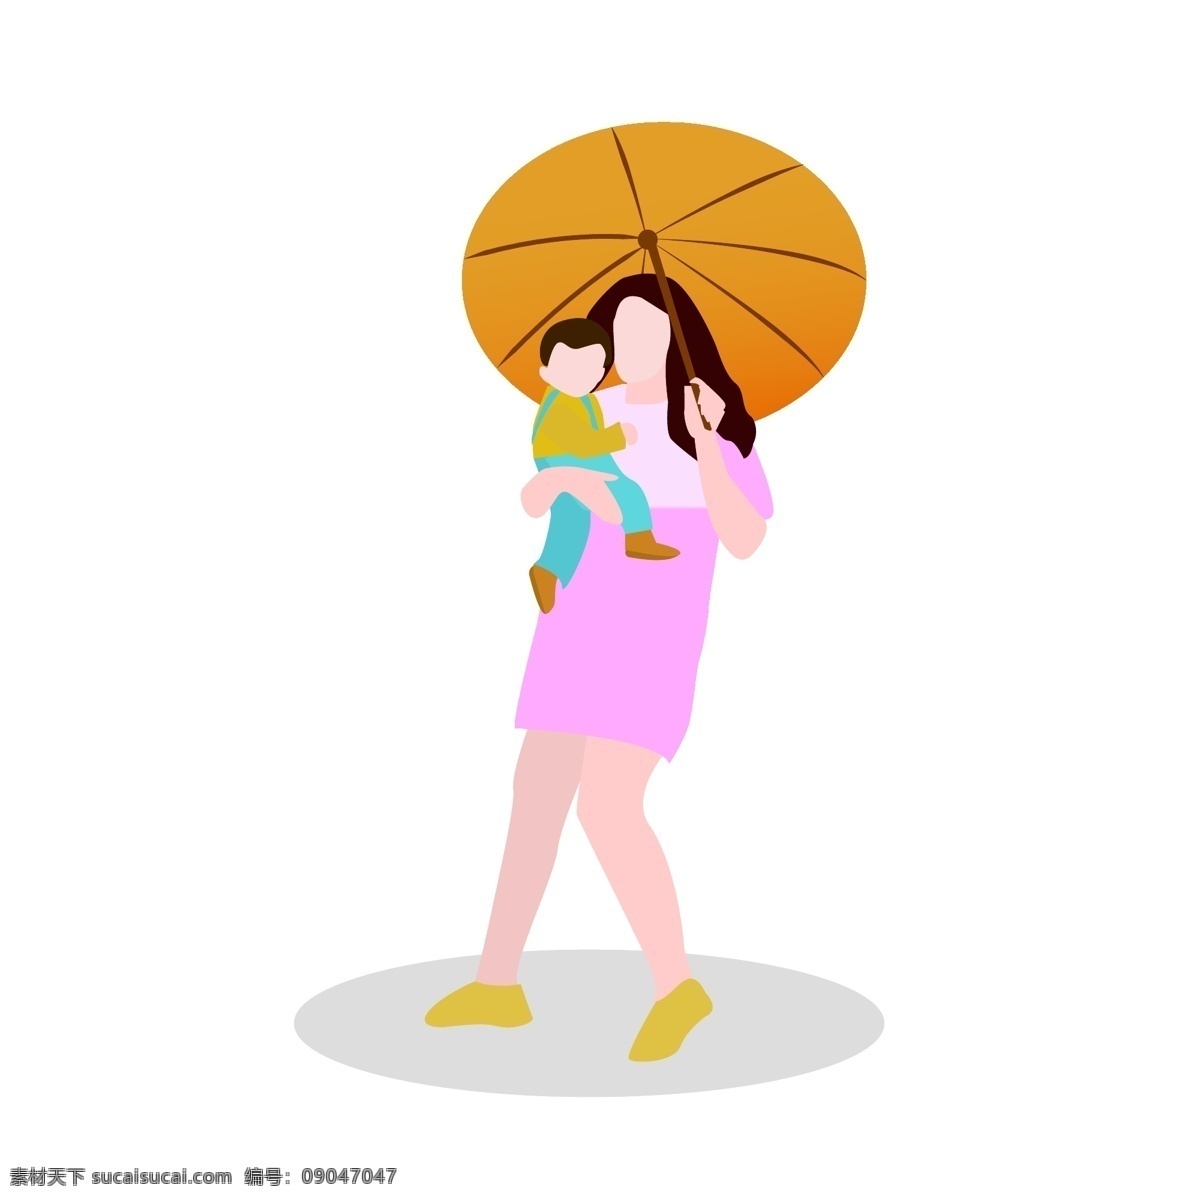 抱 孩子 打着 伞 女人 矢量 打伞的女人 妈妈 小孩 卡通 手绘 户外 外出 母子